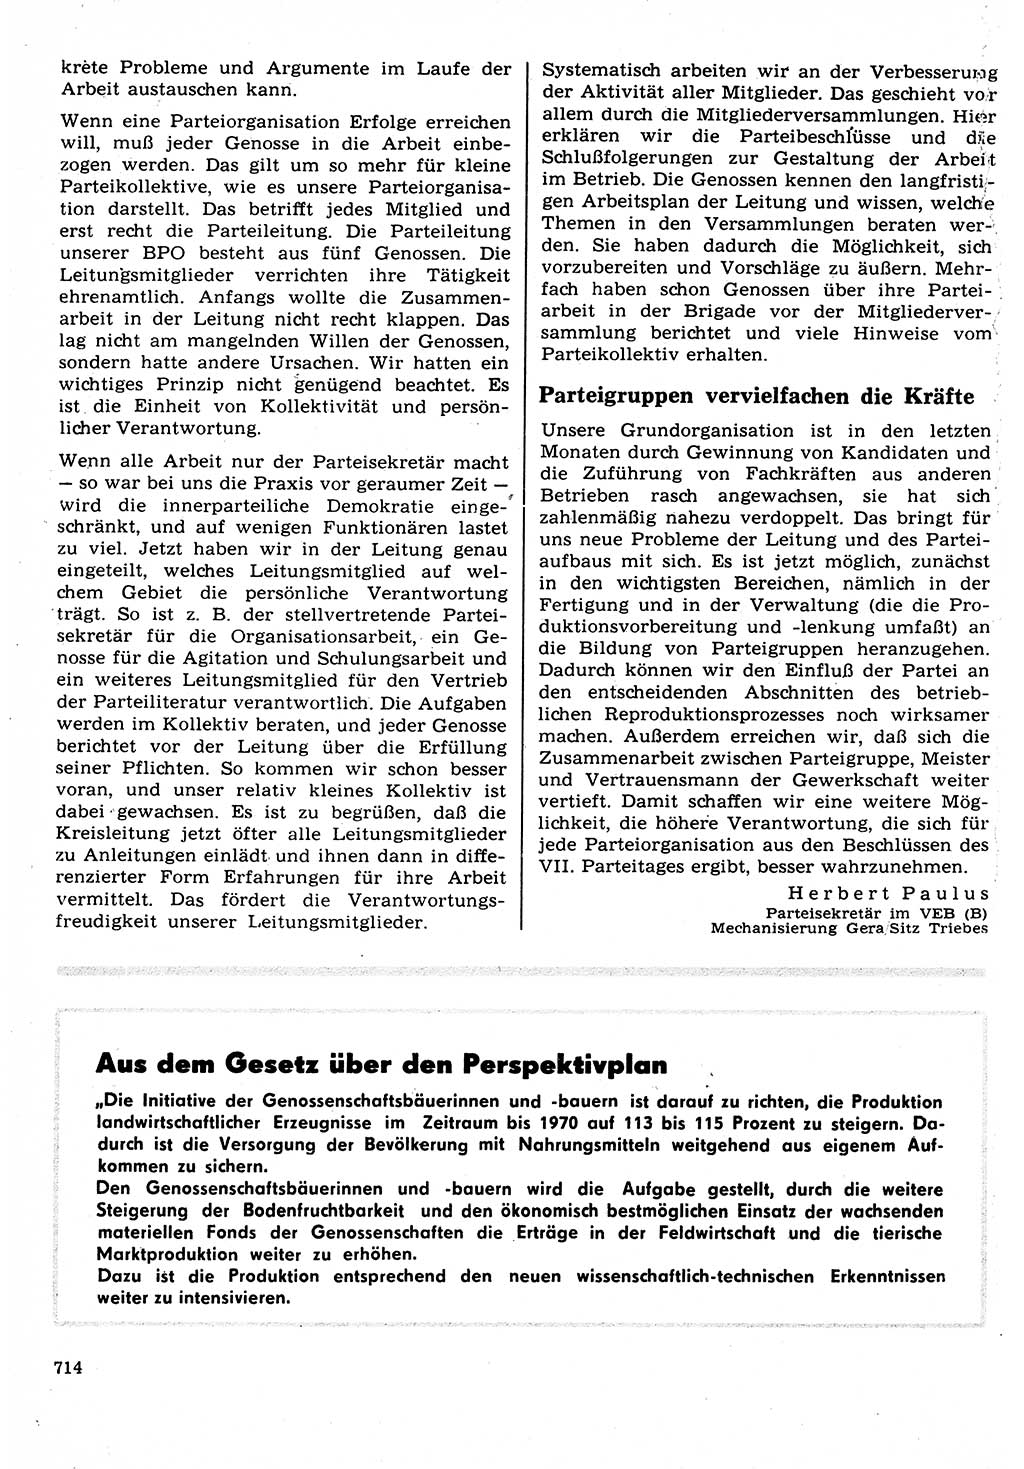 Neuer Weg (NW), Organ des Zentralkomitees (ZK) der SED (Sozialistische Einheitspartei Deutschlands) für Fragen des Parteilebens, 22. Jahrgang [Deutsche Demokratische Republik (DDR)] 1967, Seite 714 (NW ZK SED DDR 1967, S. 714)